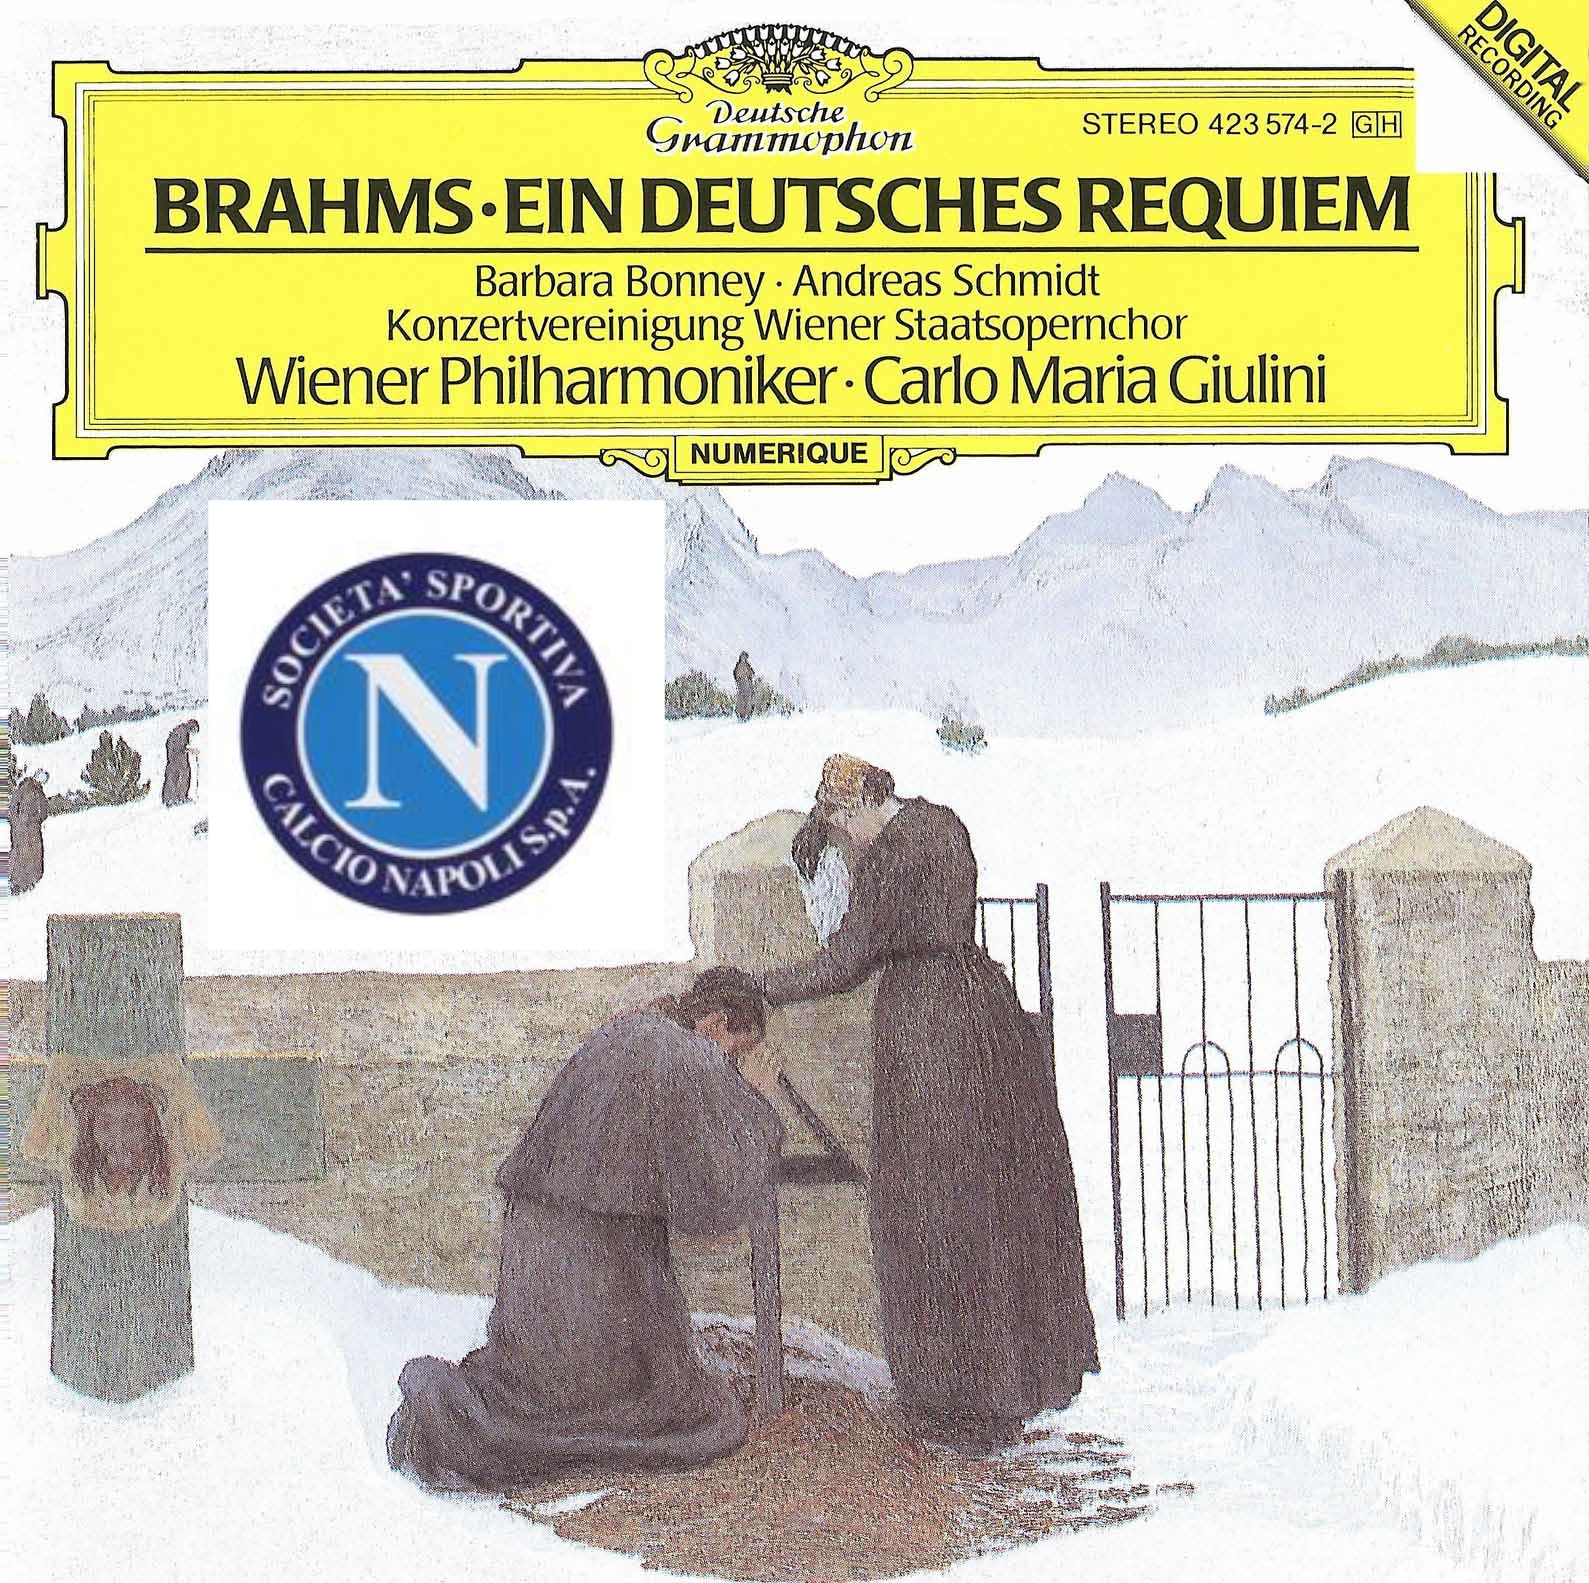 2013.11.27 - Ein deutsches Requiem